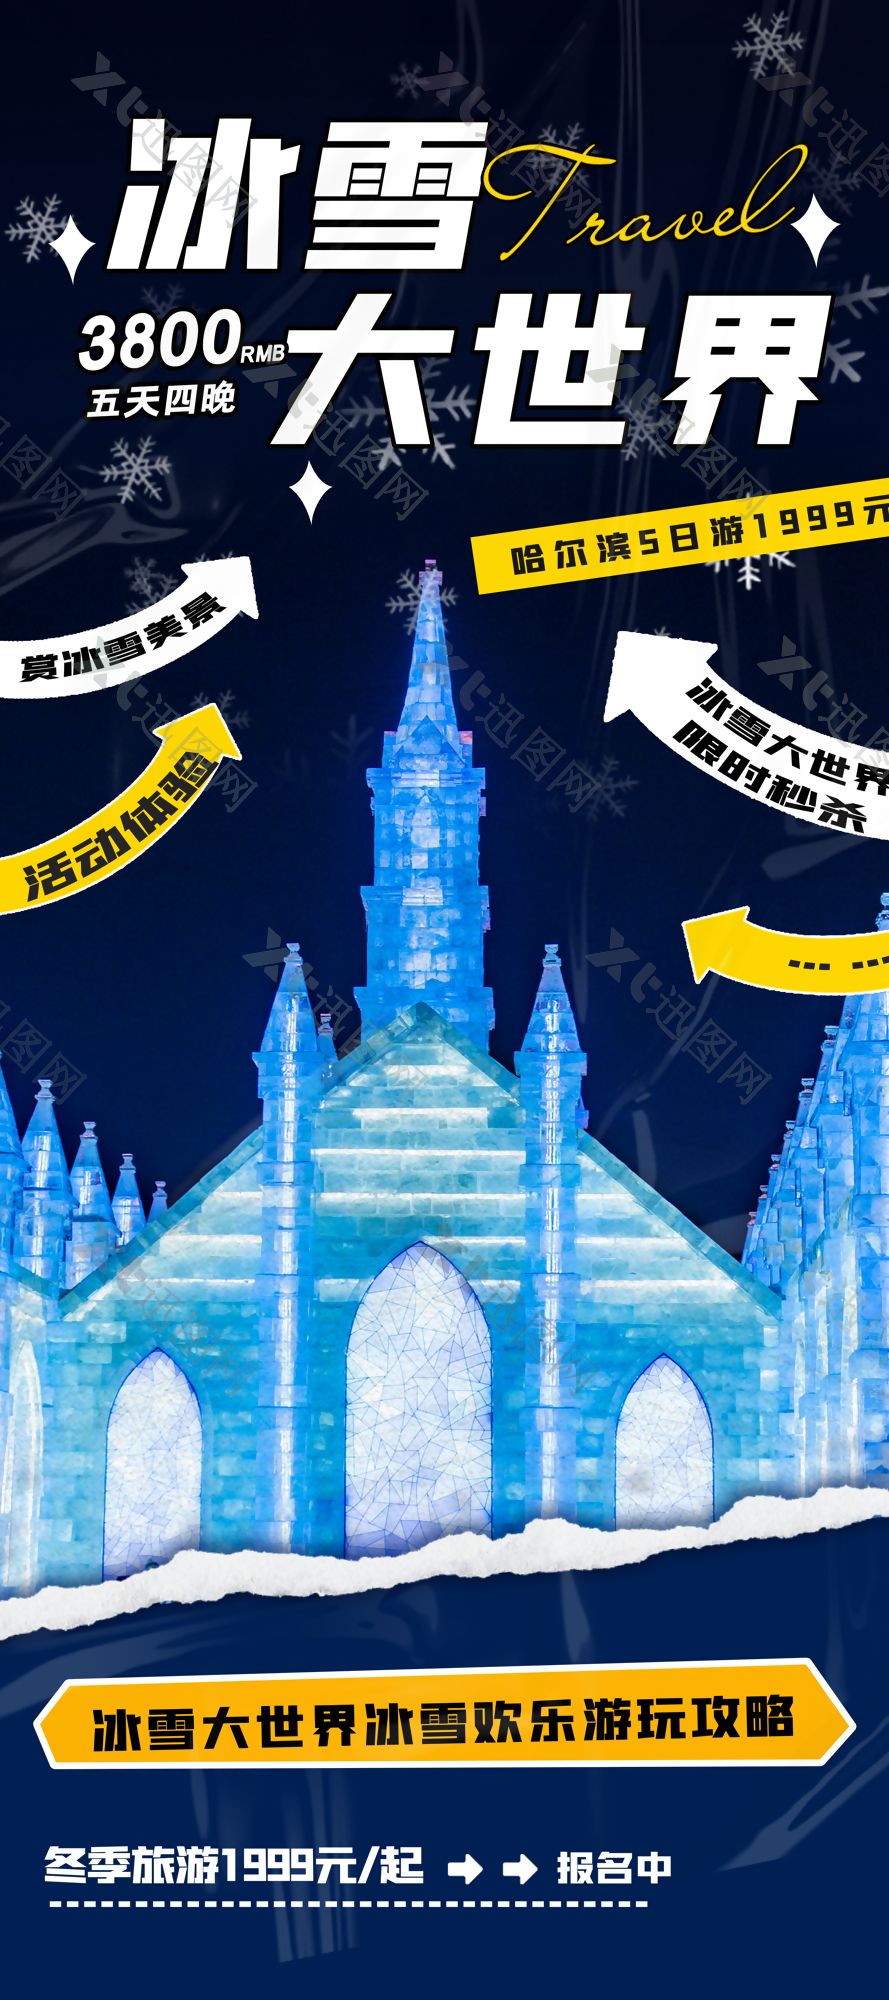 梦幻冰雪大世界游玩攻略活动海报设计